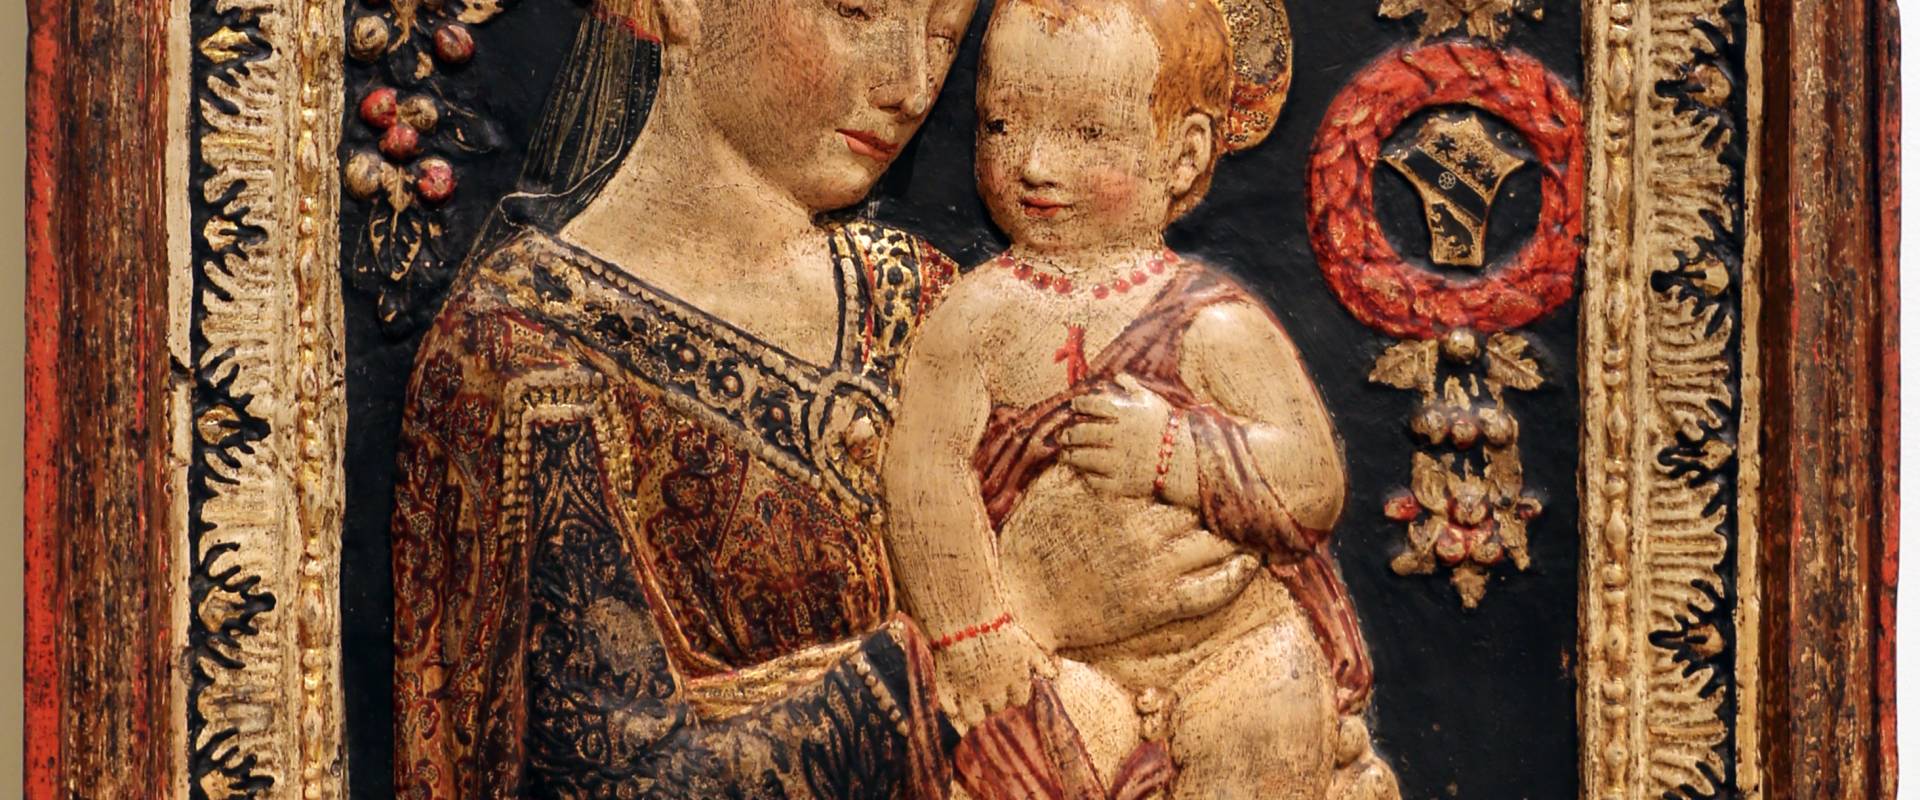 Antonio rossellino (da), madonna col bambino, stucco, 1475-1500 ca photo by Sailko